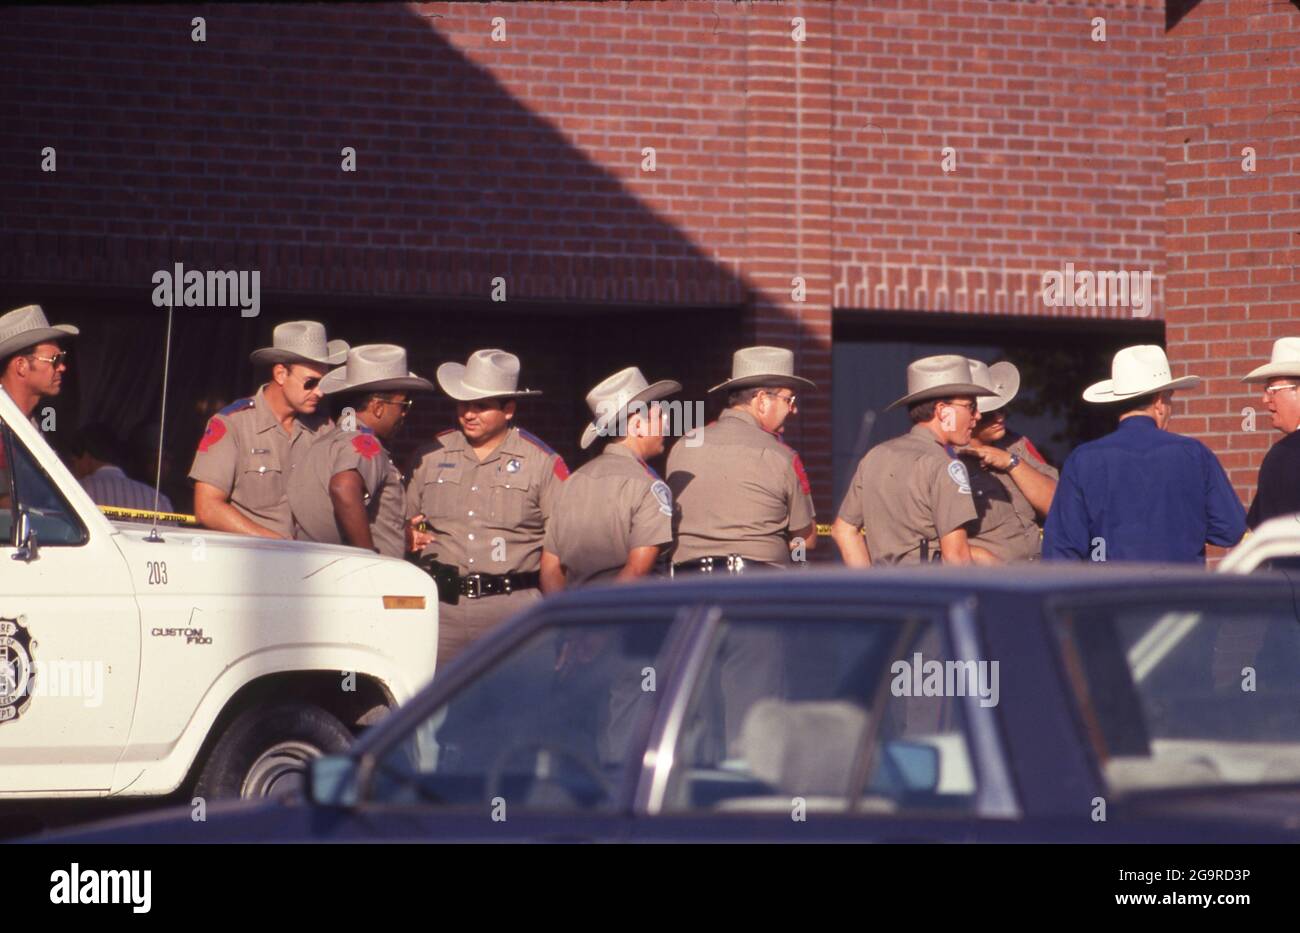 Terrorismo e disastri: ©1991 a seguito di una sparatoria di massa alla caffetteria di Luby a Killeen, Texas, il 16 ottobre 1991, dove George Hennard, 35 anni, schiantò un pickup nel ristorante e uccise 23 persone prima di uccidersi. Foto Stock